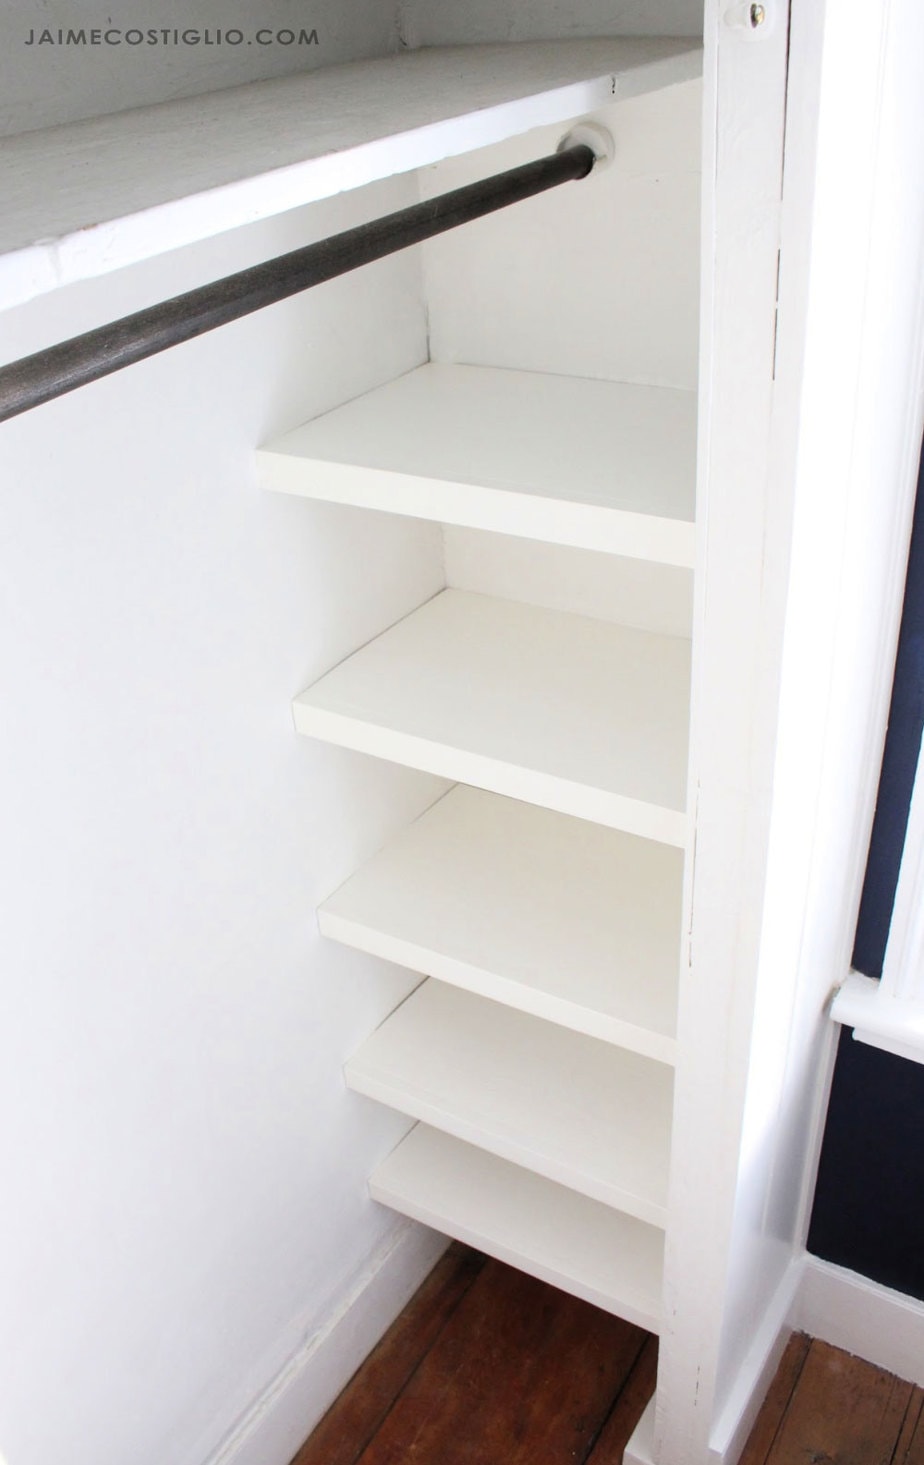 Easy Closet Shelves Jaime Costiglio, How To Build Corner Shelves In Closet